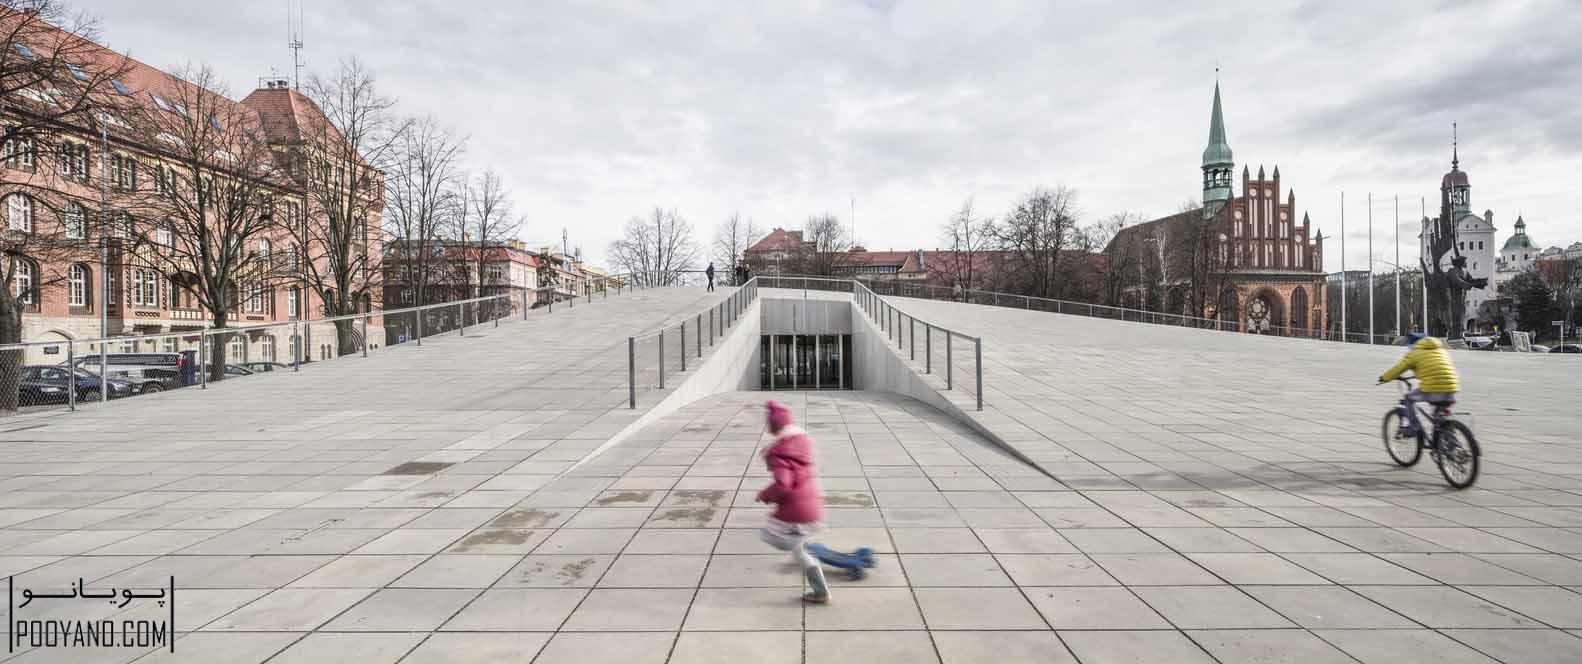 برندگان جایزه اروپایی، معماری فضاهای عمومی شهری 2016